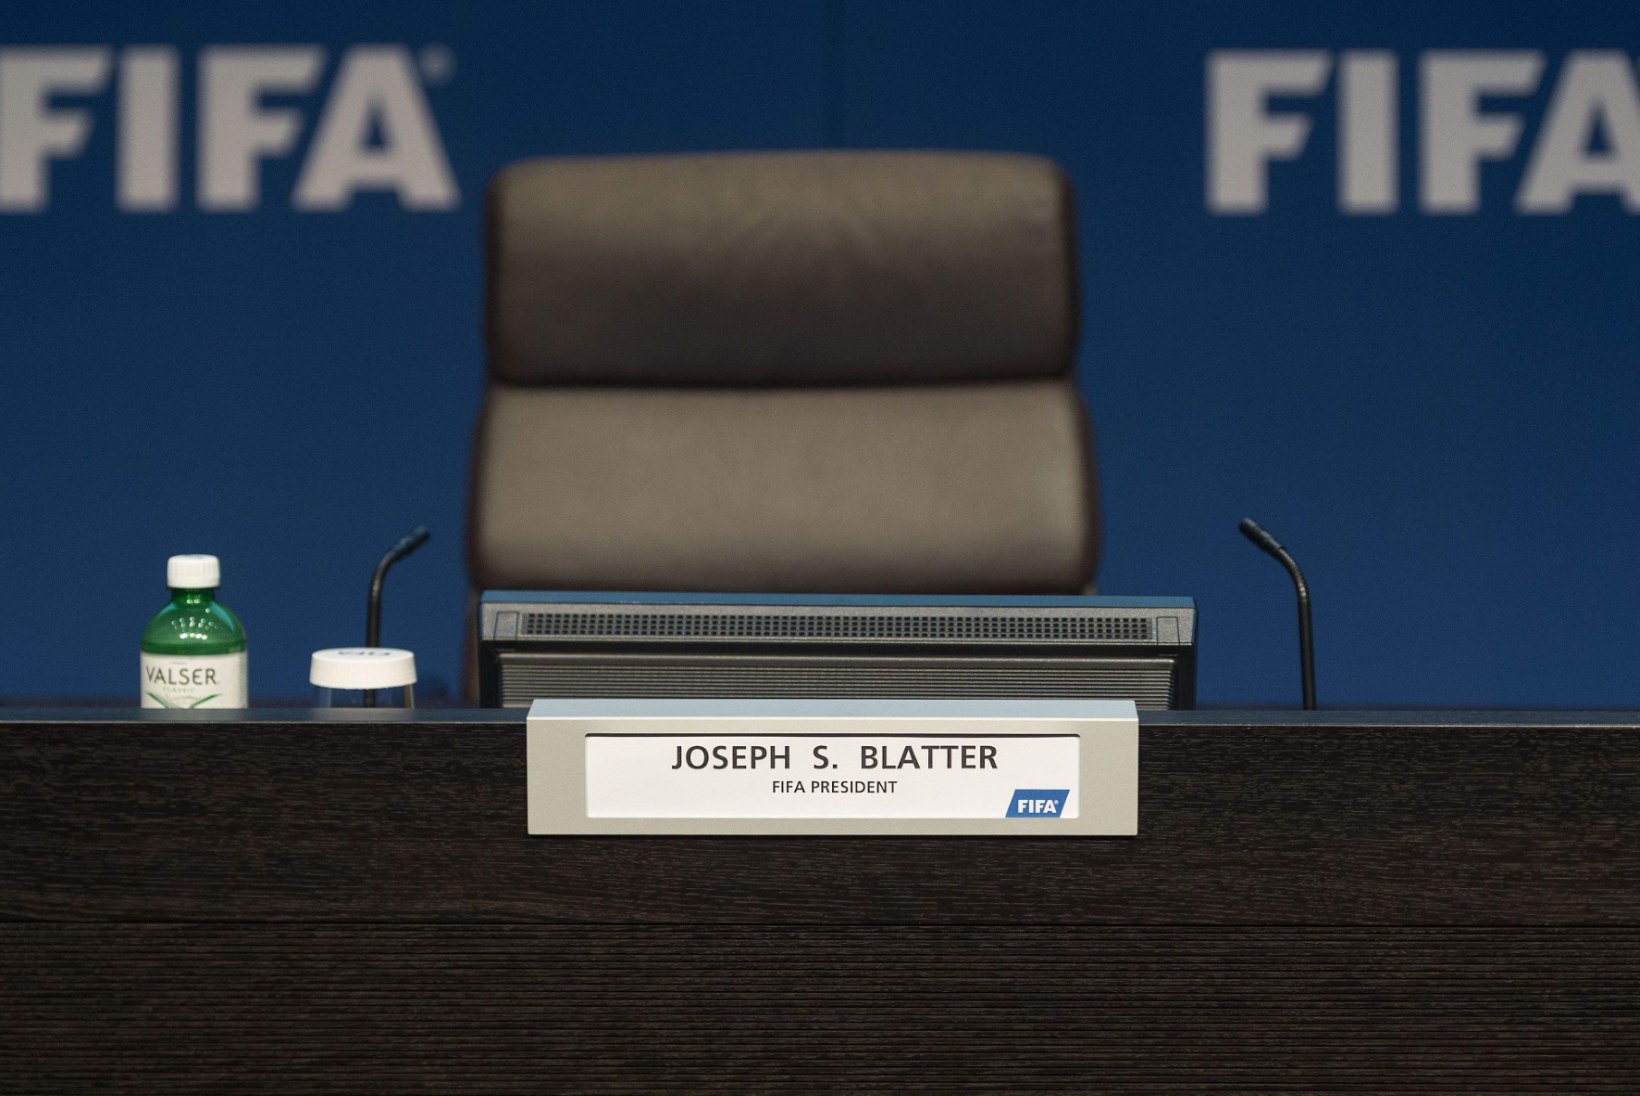 Lahkumisteade algatas Sepp Blatteri presidentuuri kõige tähtsama perioodi